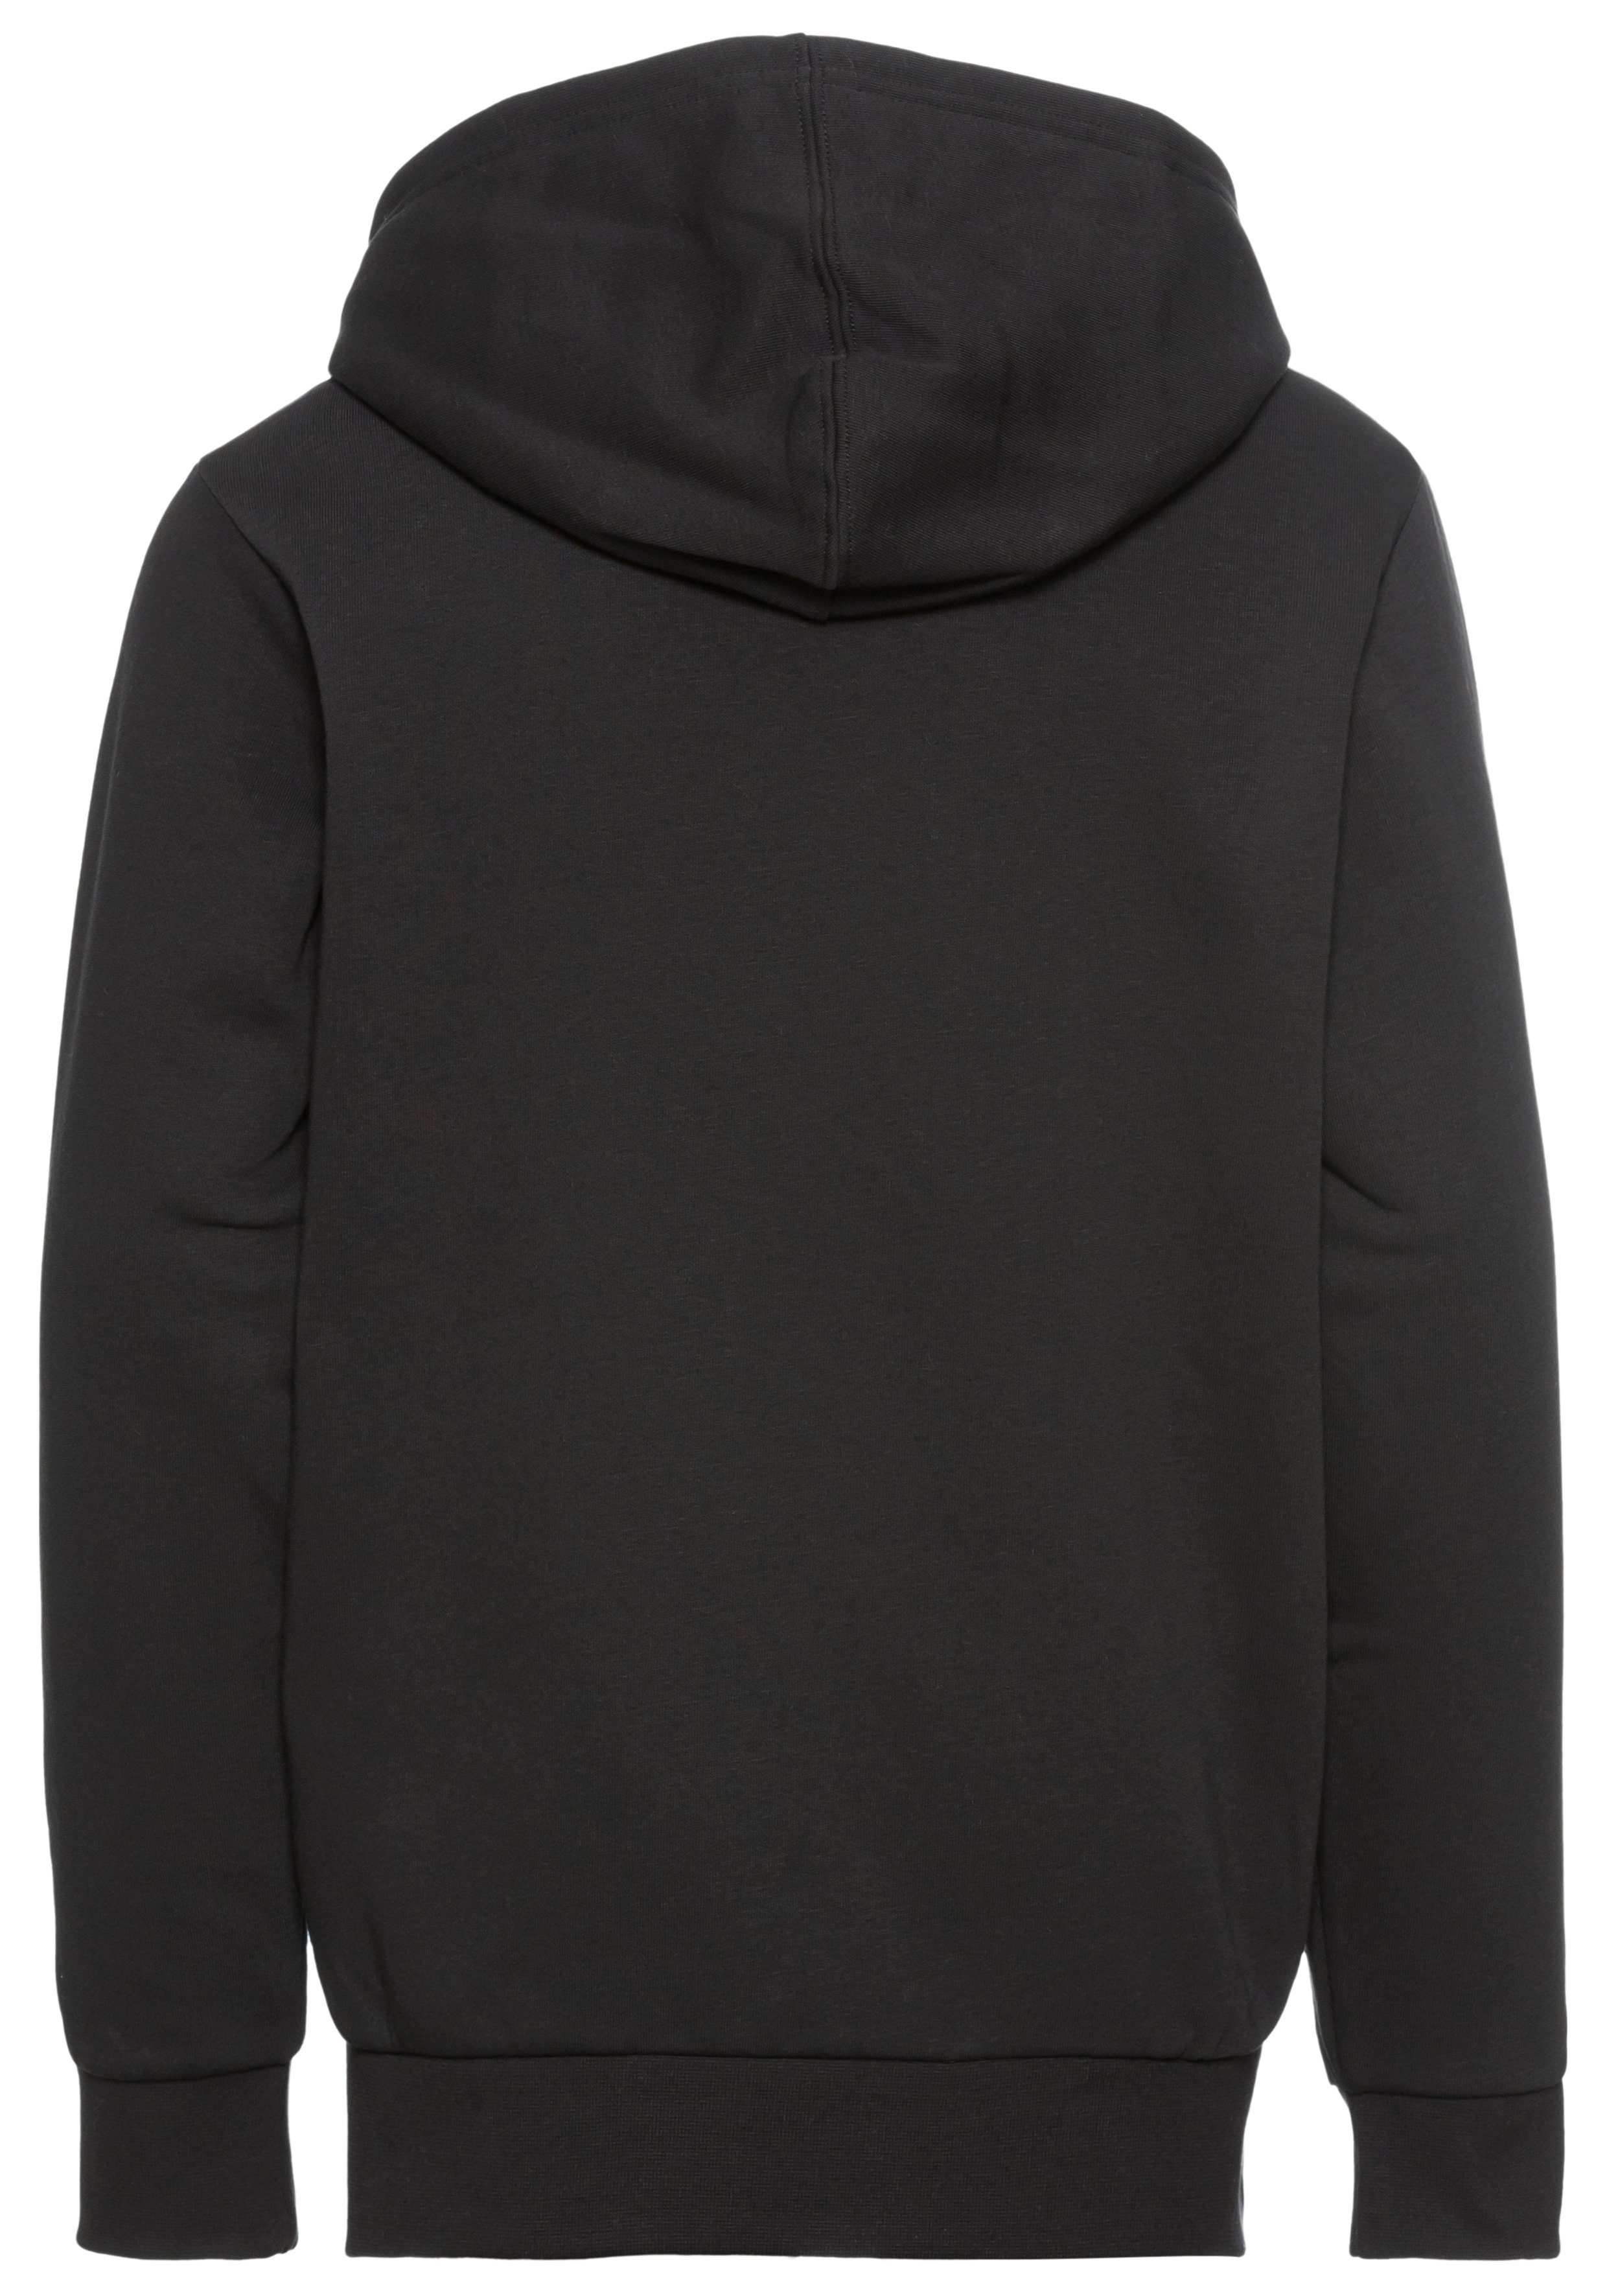 schwarz Champion Hooded Sweatshirt Icons Kapuzensweatshirt